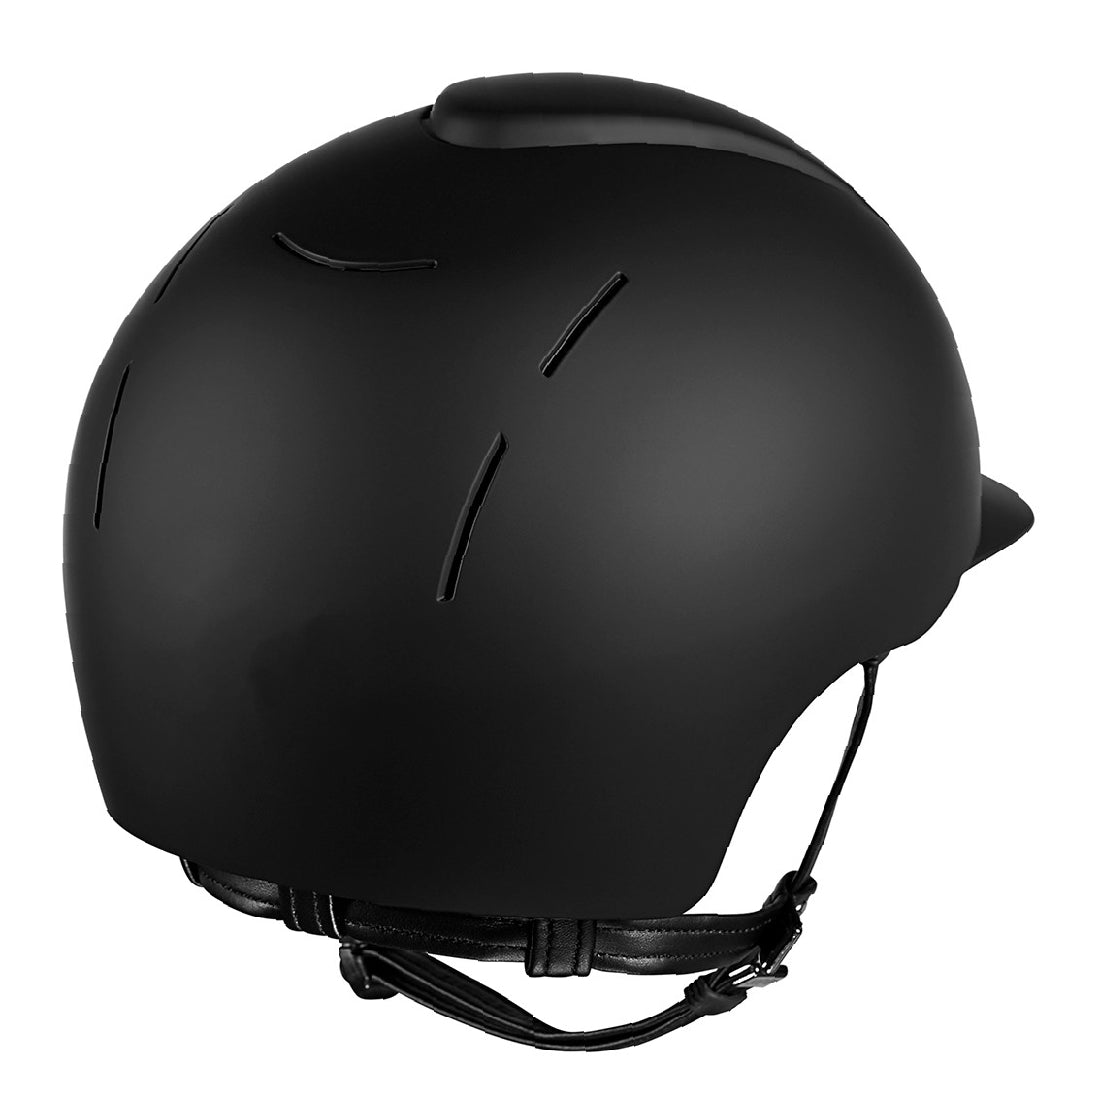 KEP black equestrian helmet, sleek design with venting slots.